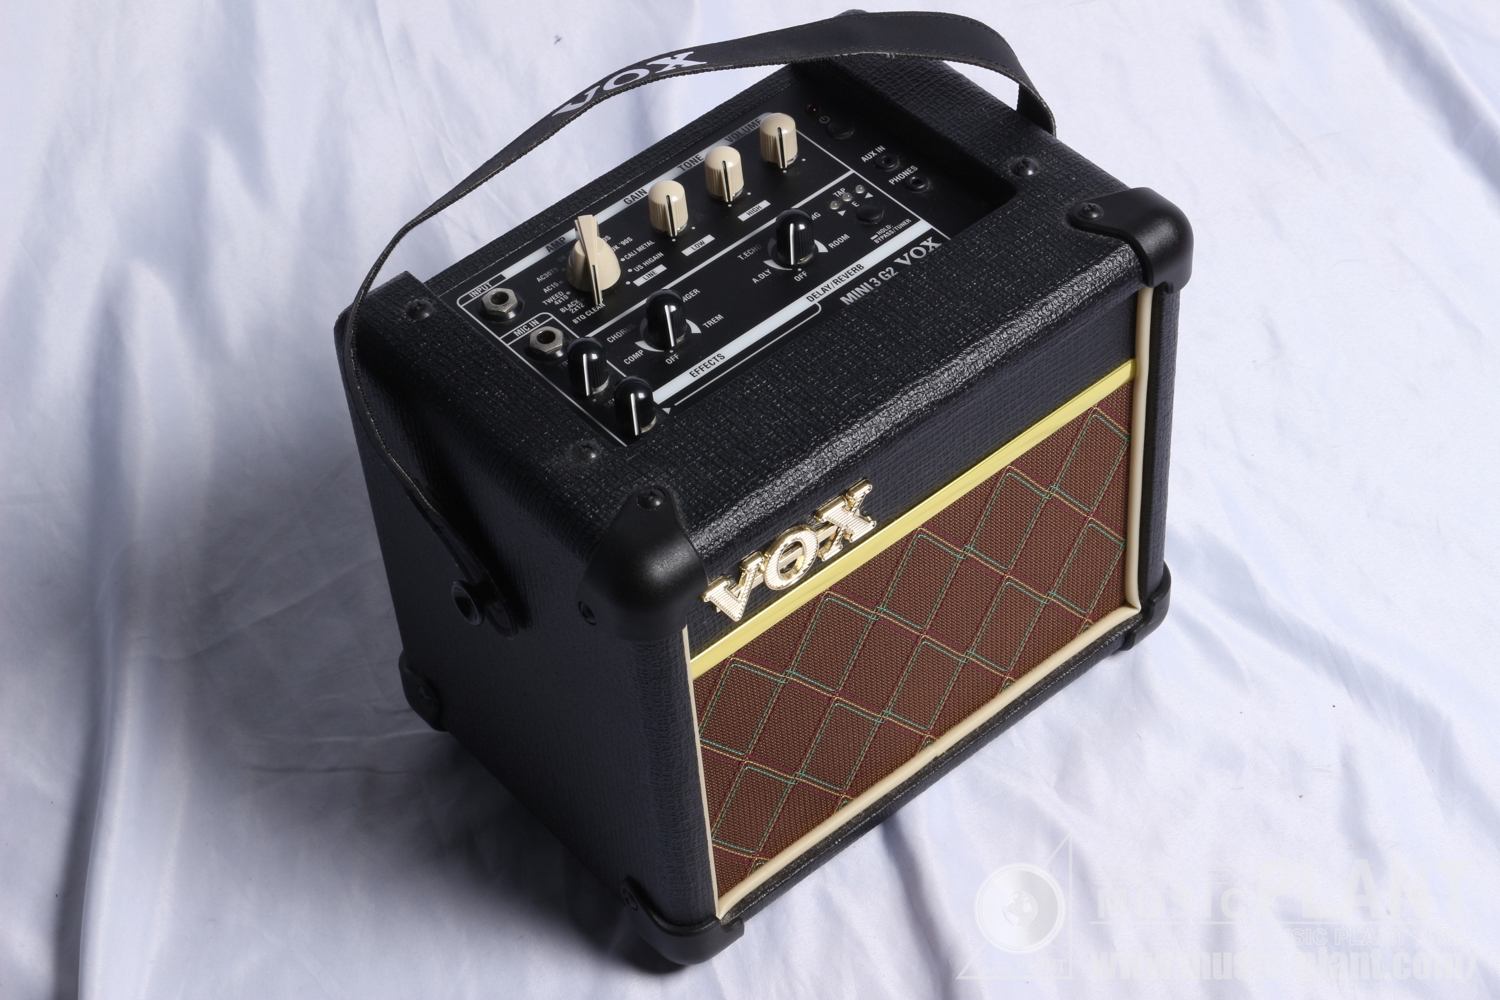 VOX ギターアンプコンボMINI3 G2 CL中古()売却済みです。あしからずご了承ください。 | MUSIC WEBSHOP